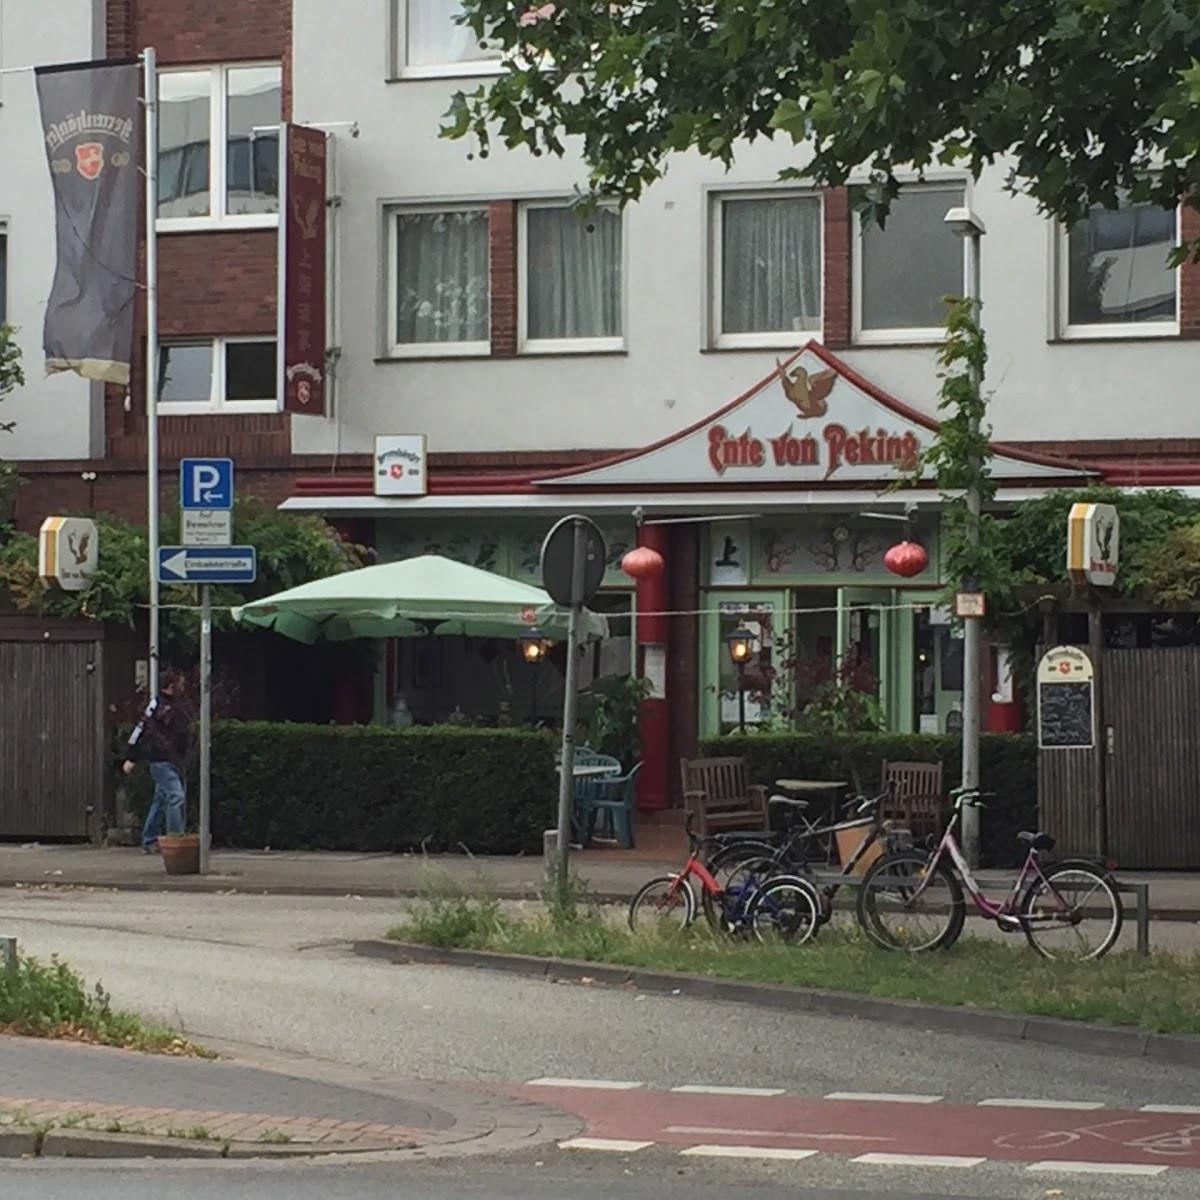 Restaurant "Ente von Peking" in Hannover